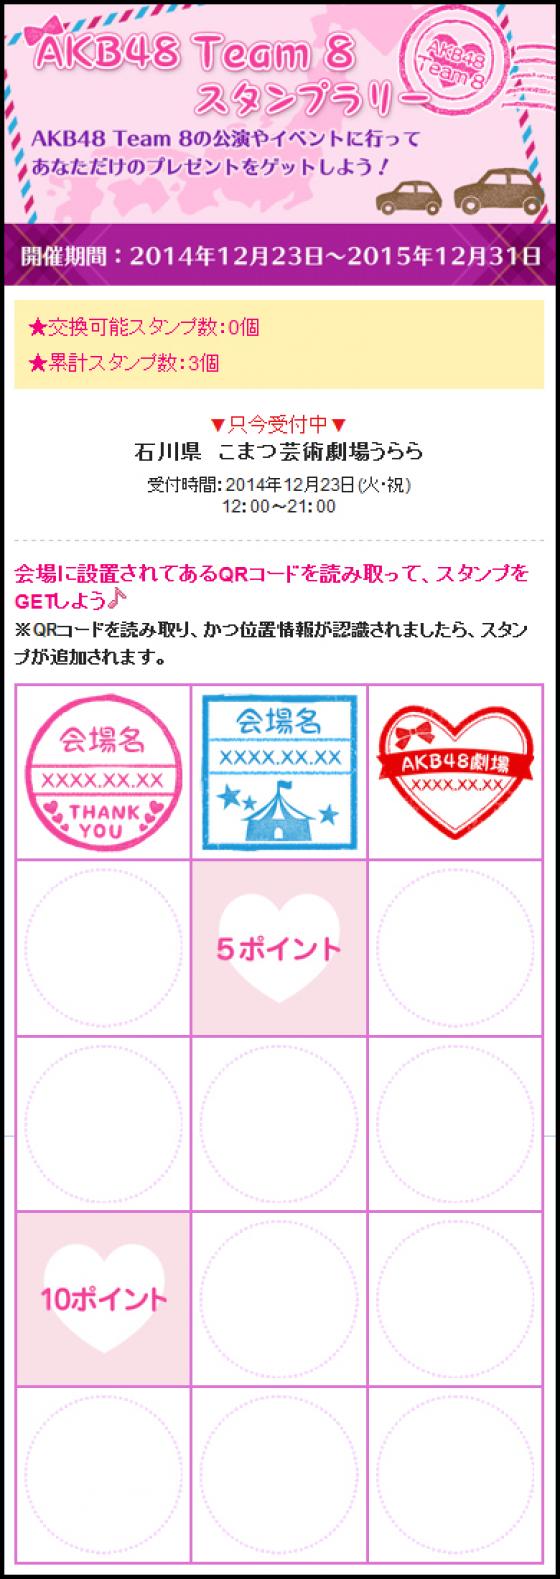 イベントに参加してスタンプを貯めよう！ 「AKB48 Team 8スタンプラリー」スタート！